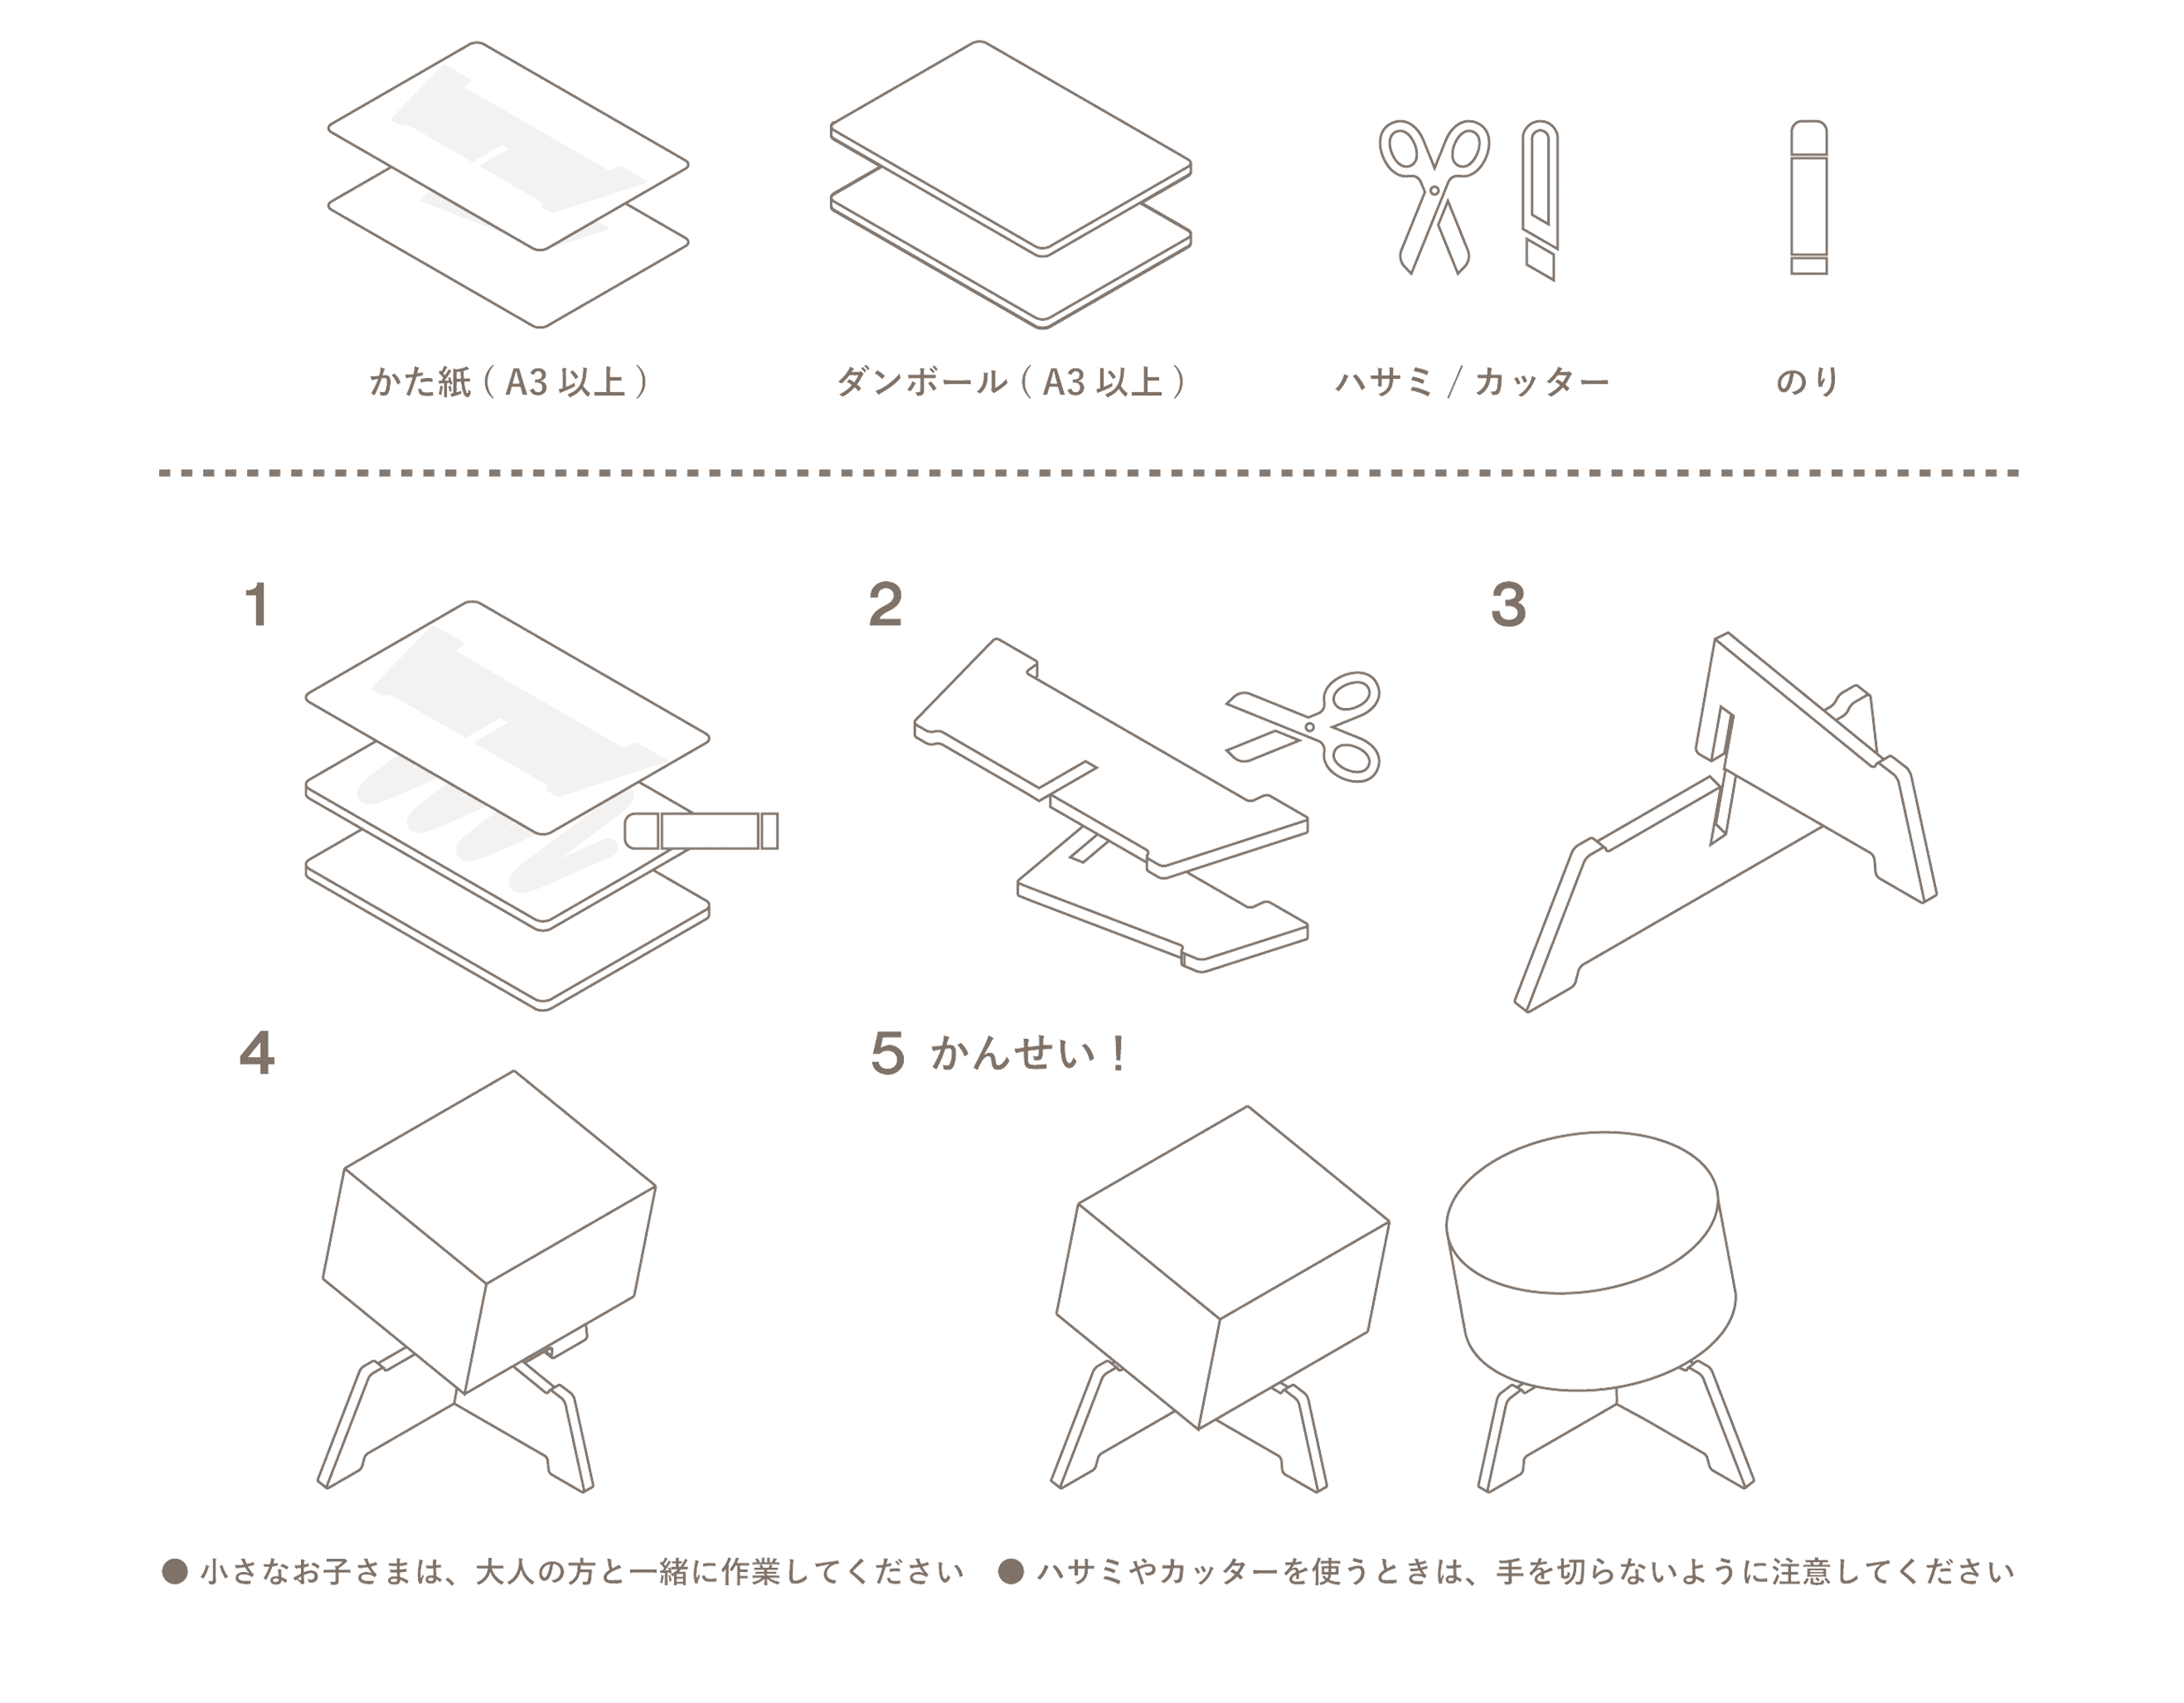 【つかうもの】型紙（A3）、段ボール（A3）、ハサミ／カッター、のり、ボンド